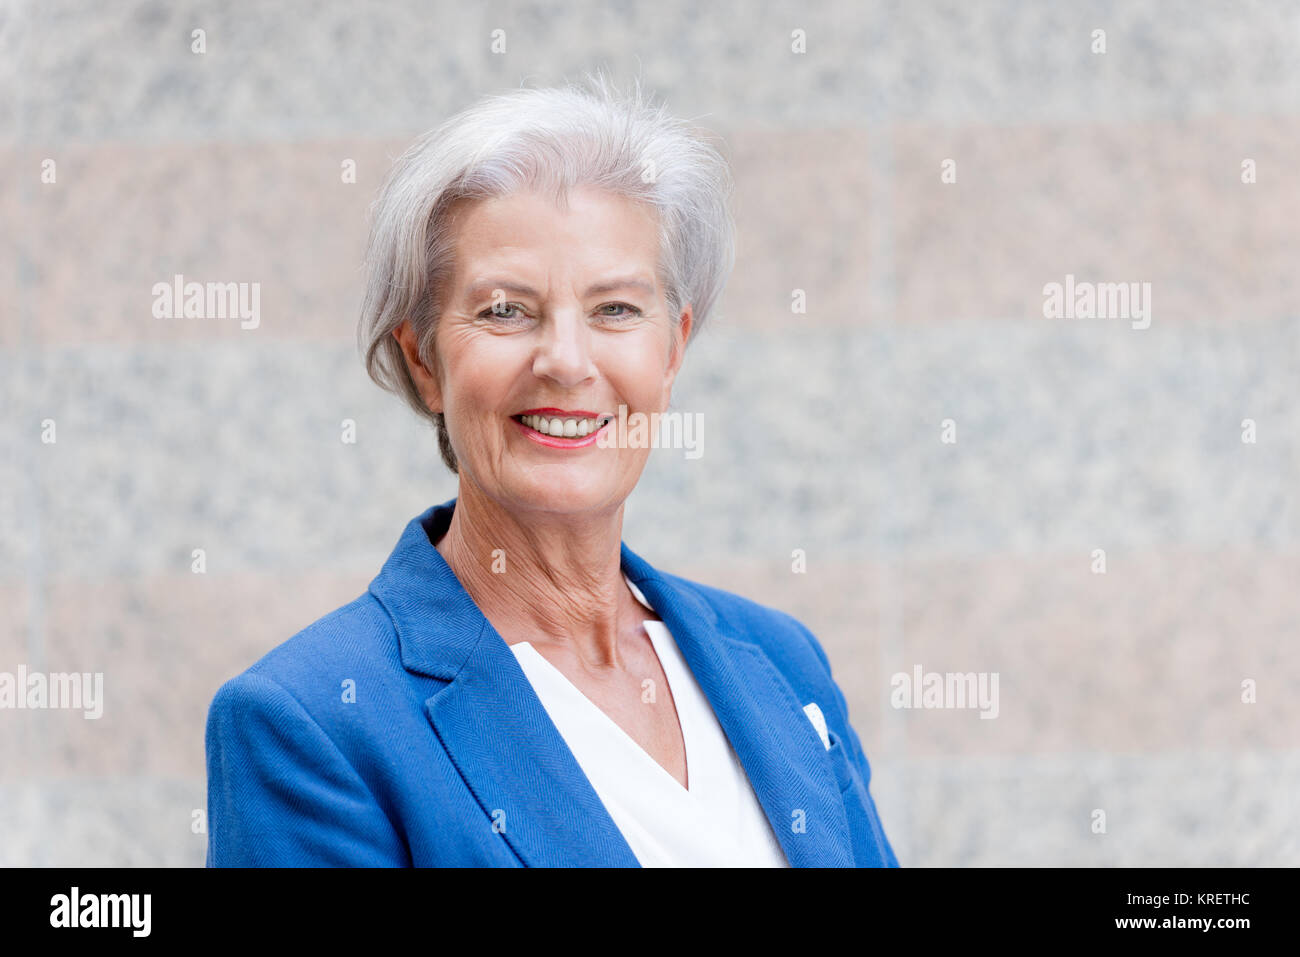 Lächelnde Seniorin mit grauem Haar vor einer Wand Foto Stock